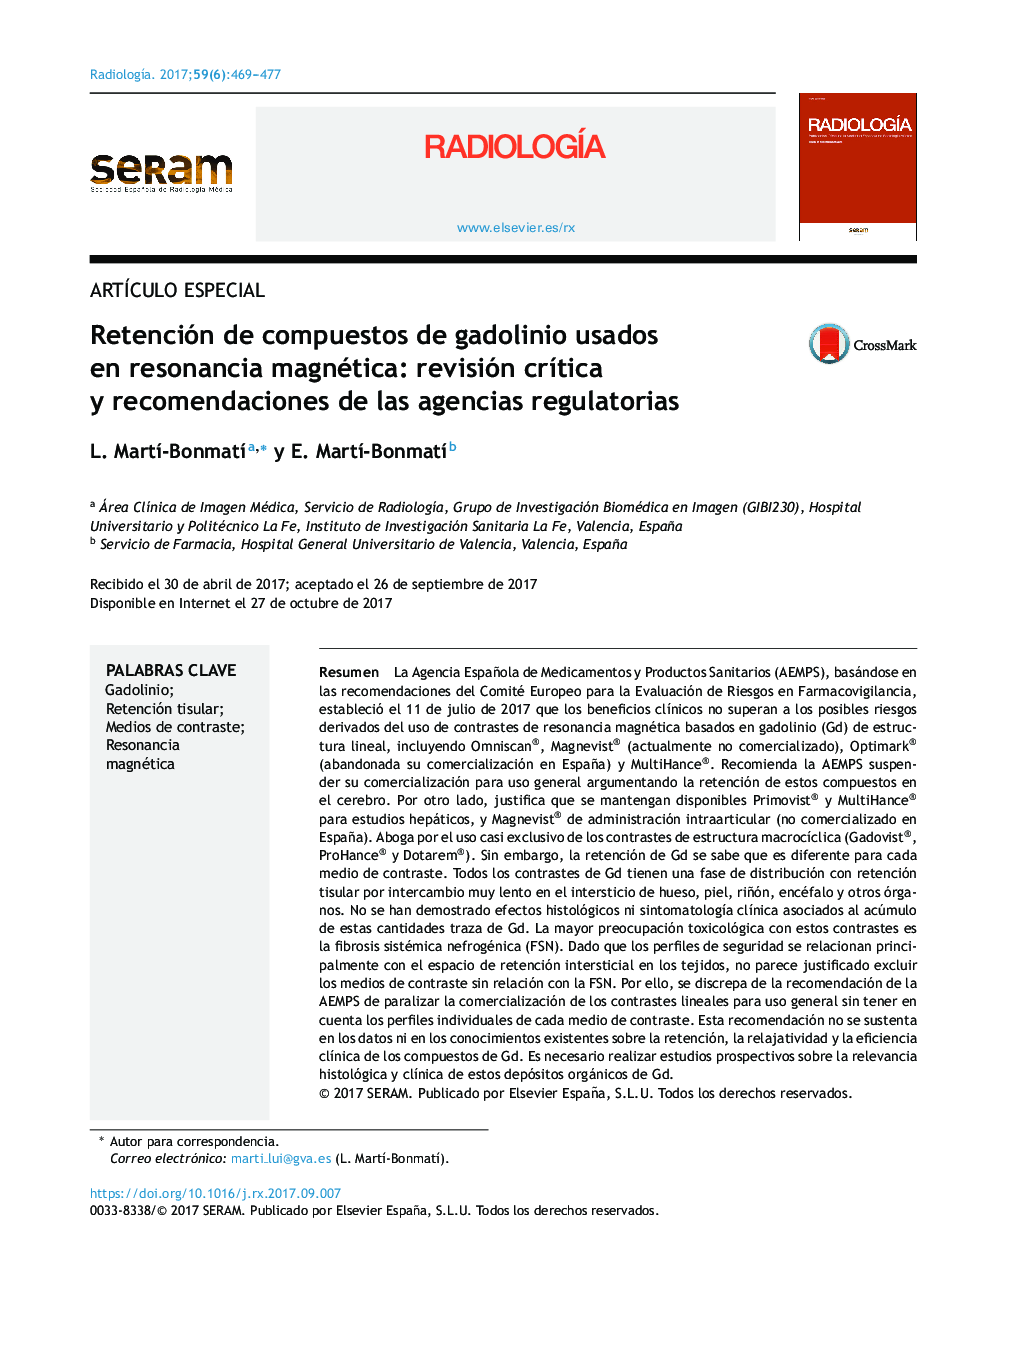 Retención de compuestos de gadolinio usados en resonancia magnética: revisión crÃ­tica y recomendaciones de las agencias regulatorias